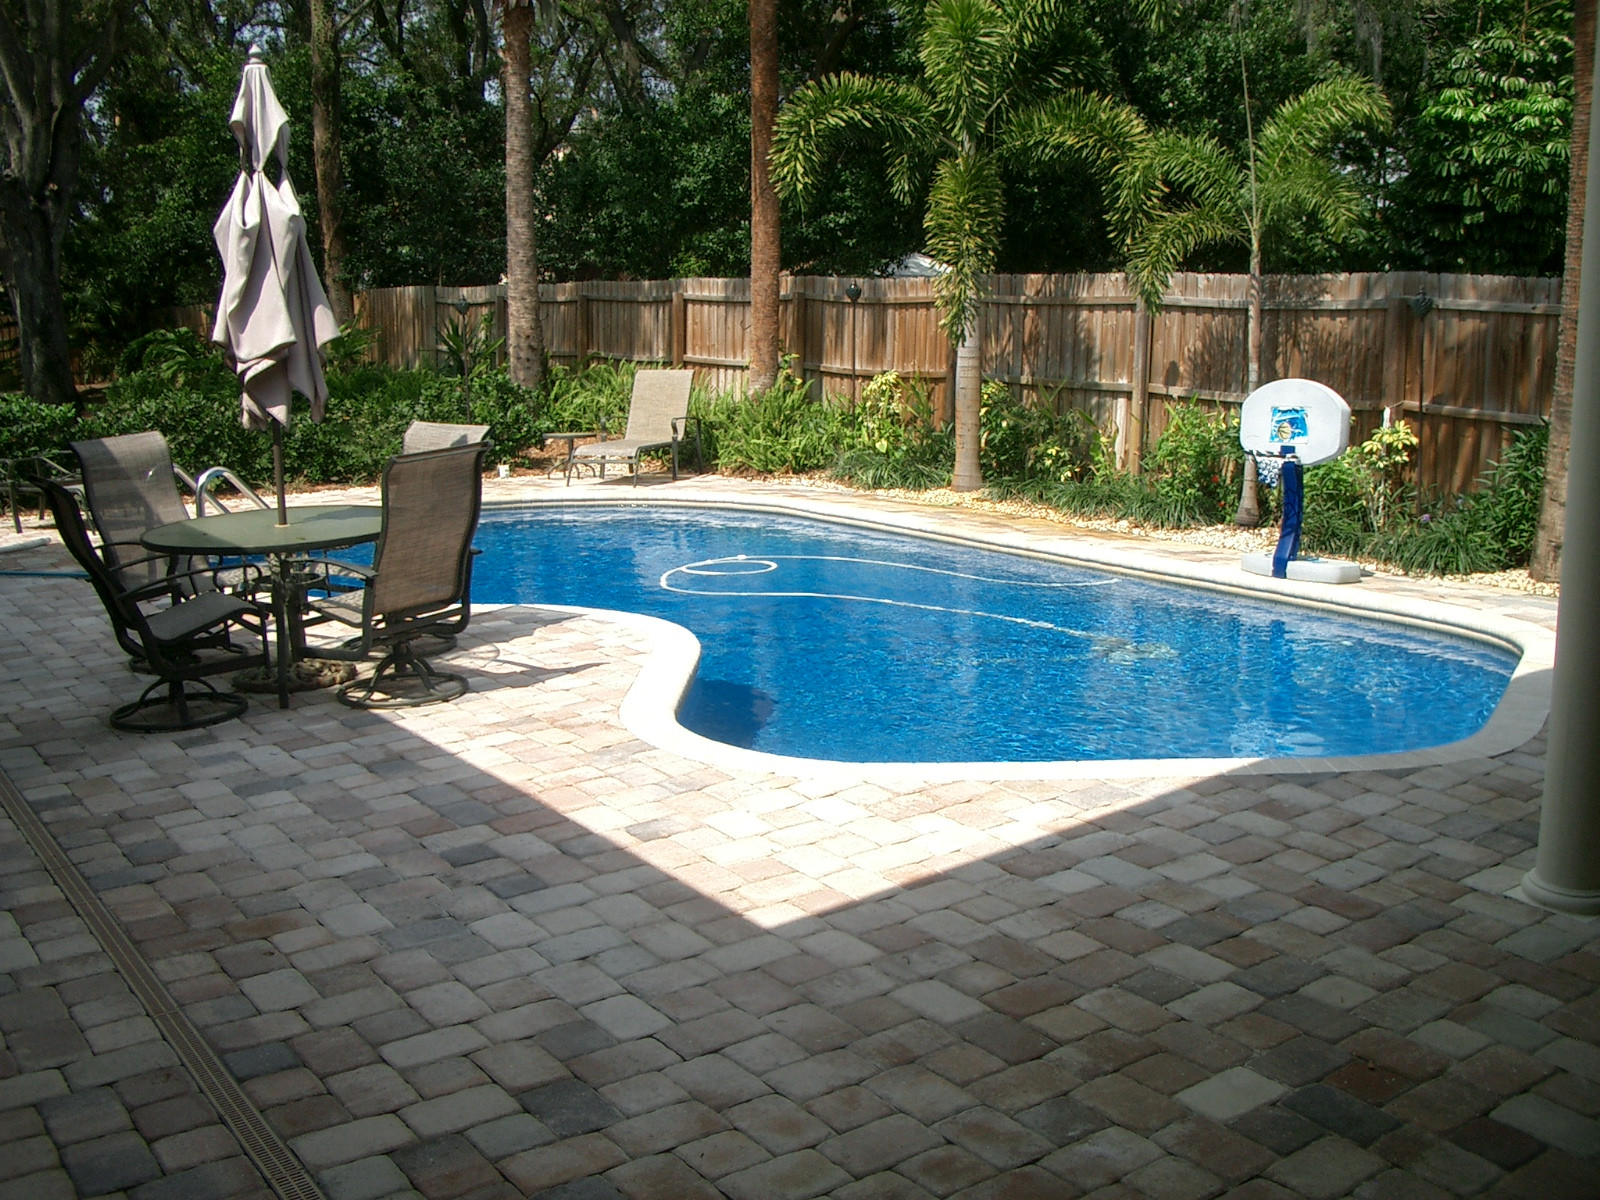 Backyard Pool Ideas
 35 Best Backyard Pool Ideas – The WoW Style